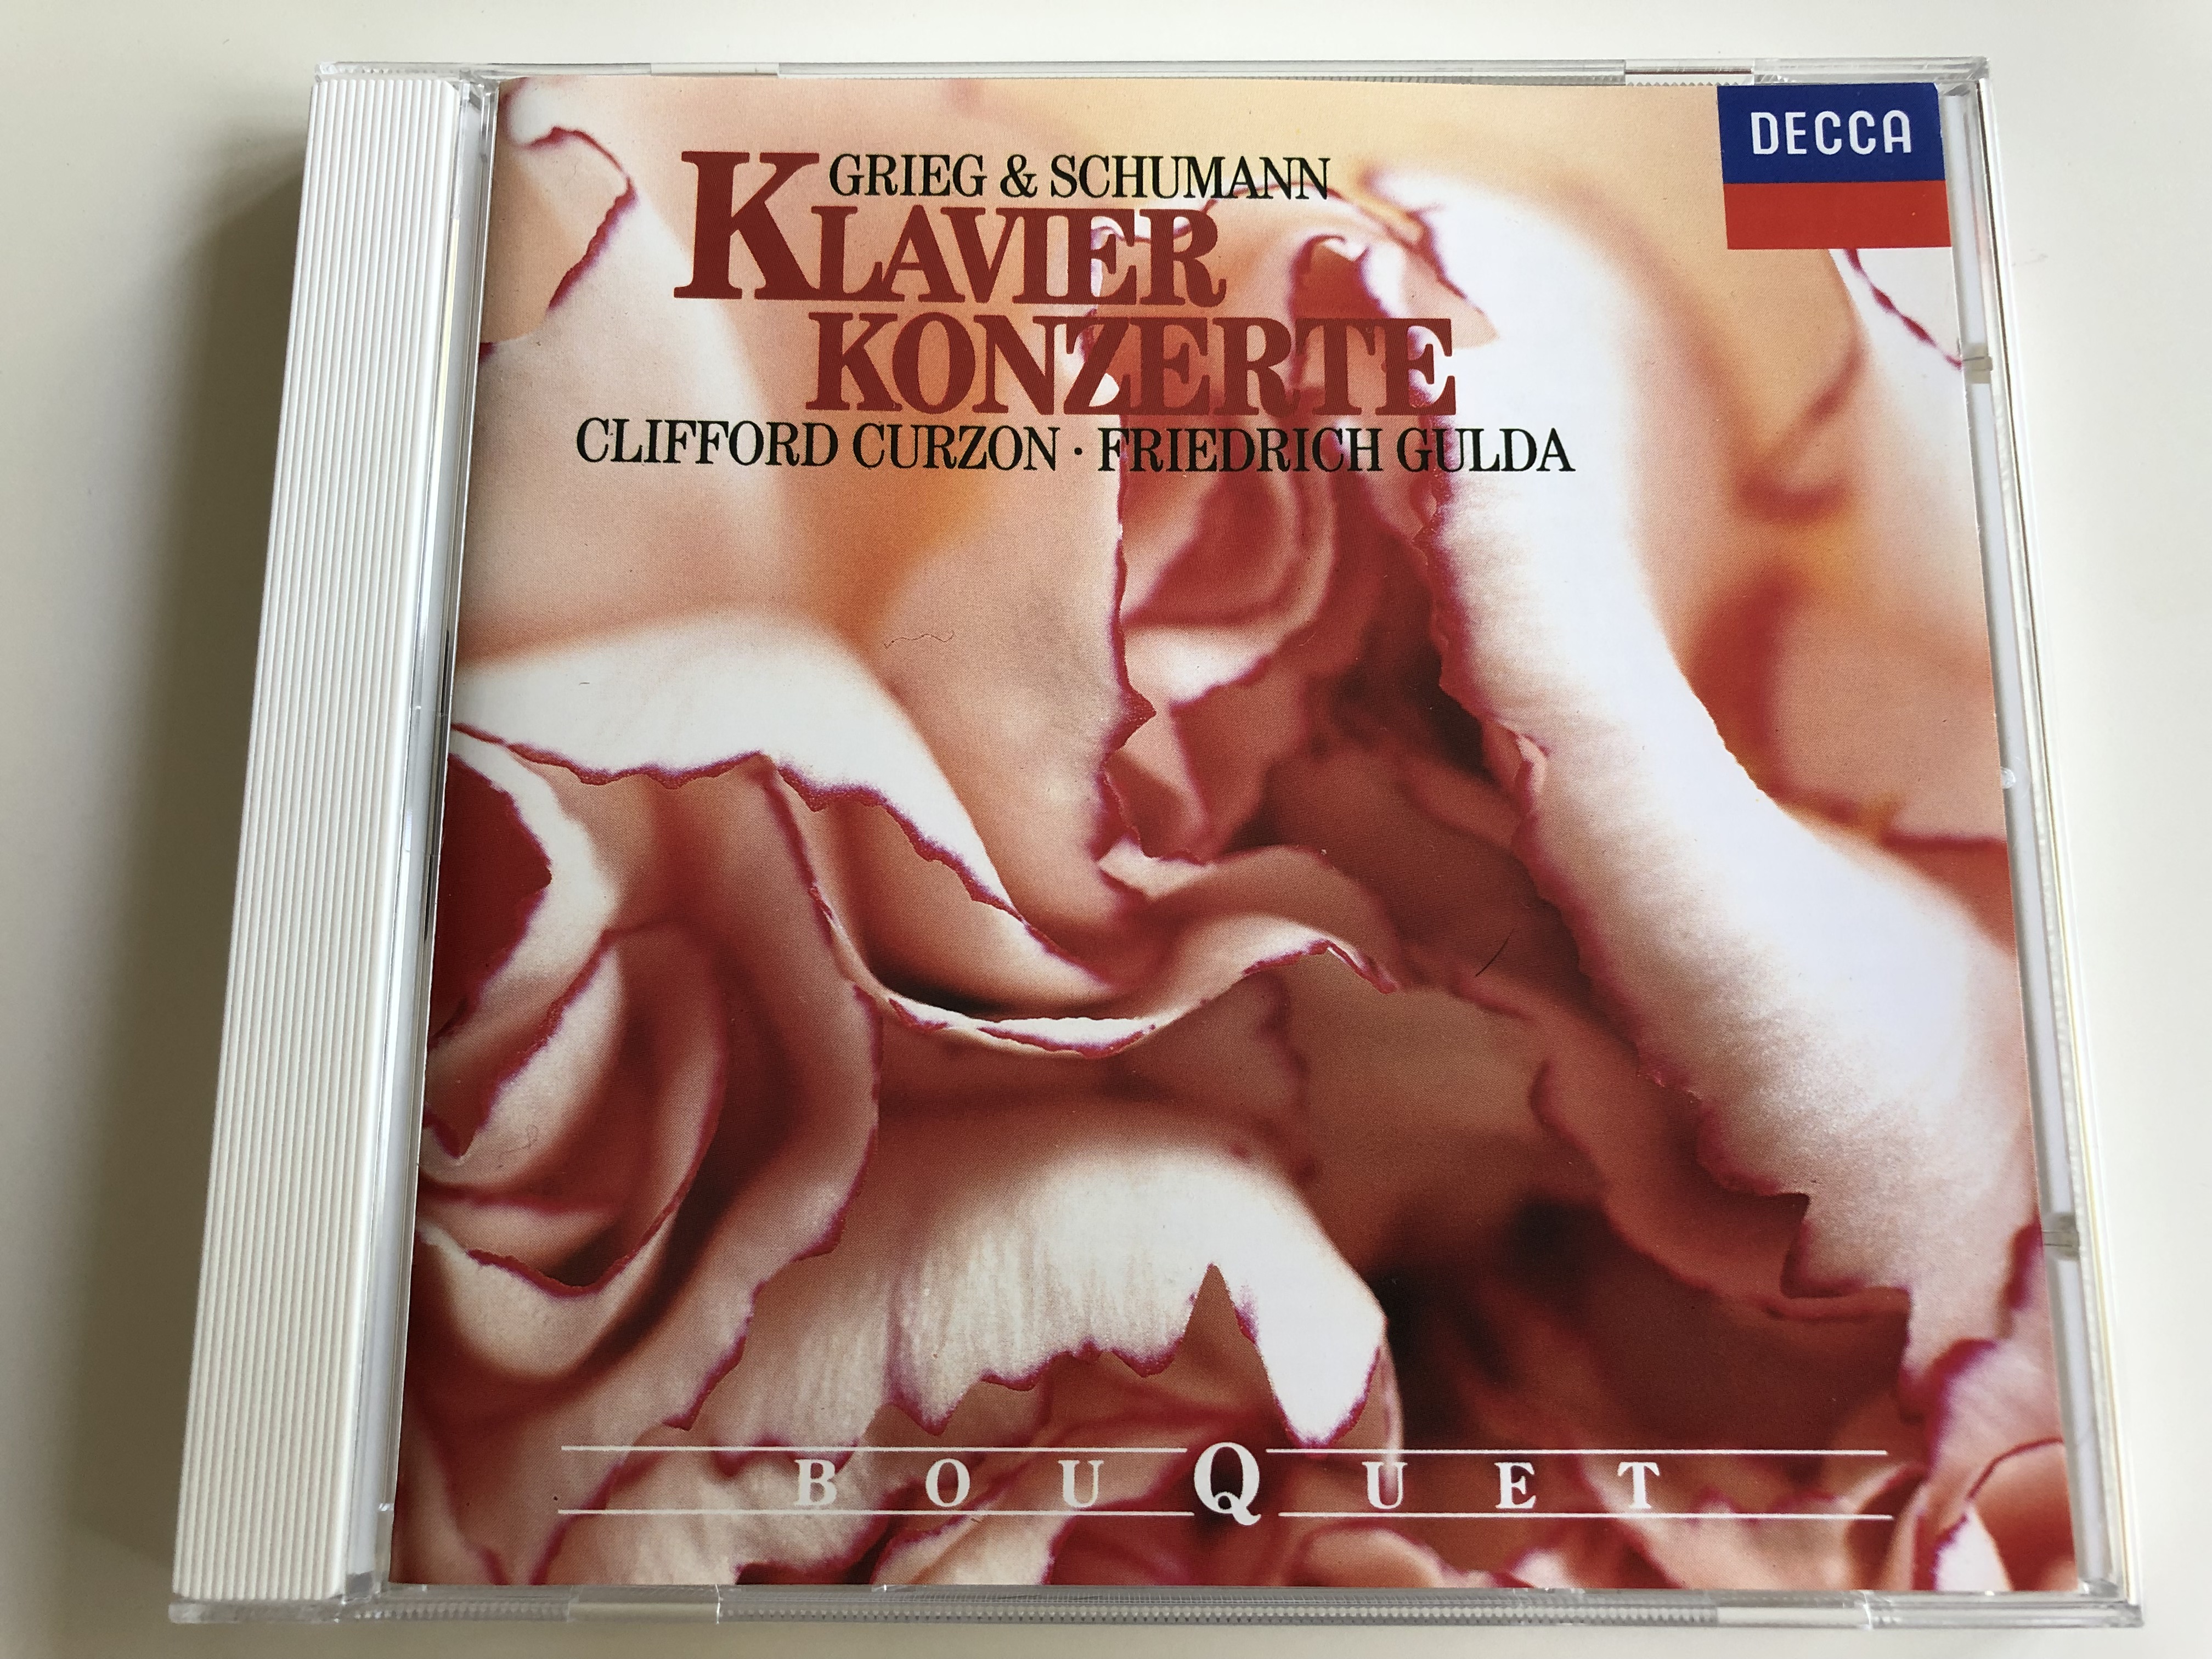 -grieg-schumann-klavier-konzerte-clifford-curzon-friedrich-gulda-bouquet-audio-cd-1992-1-.jpg